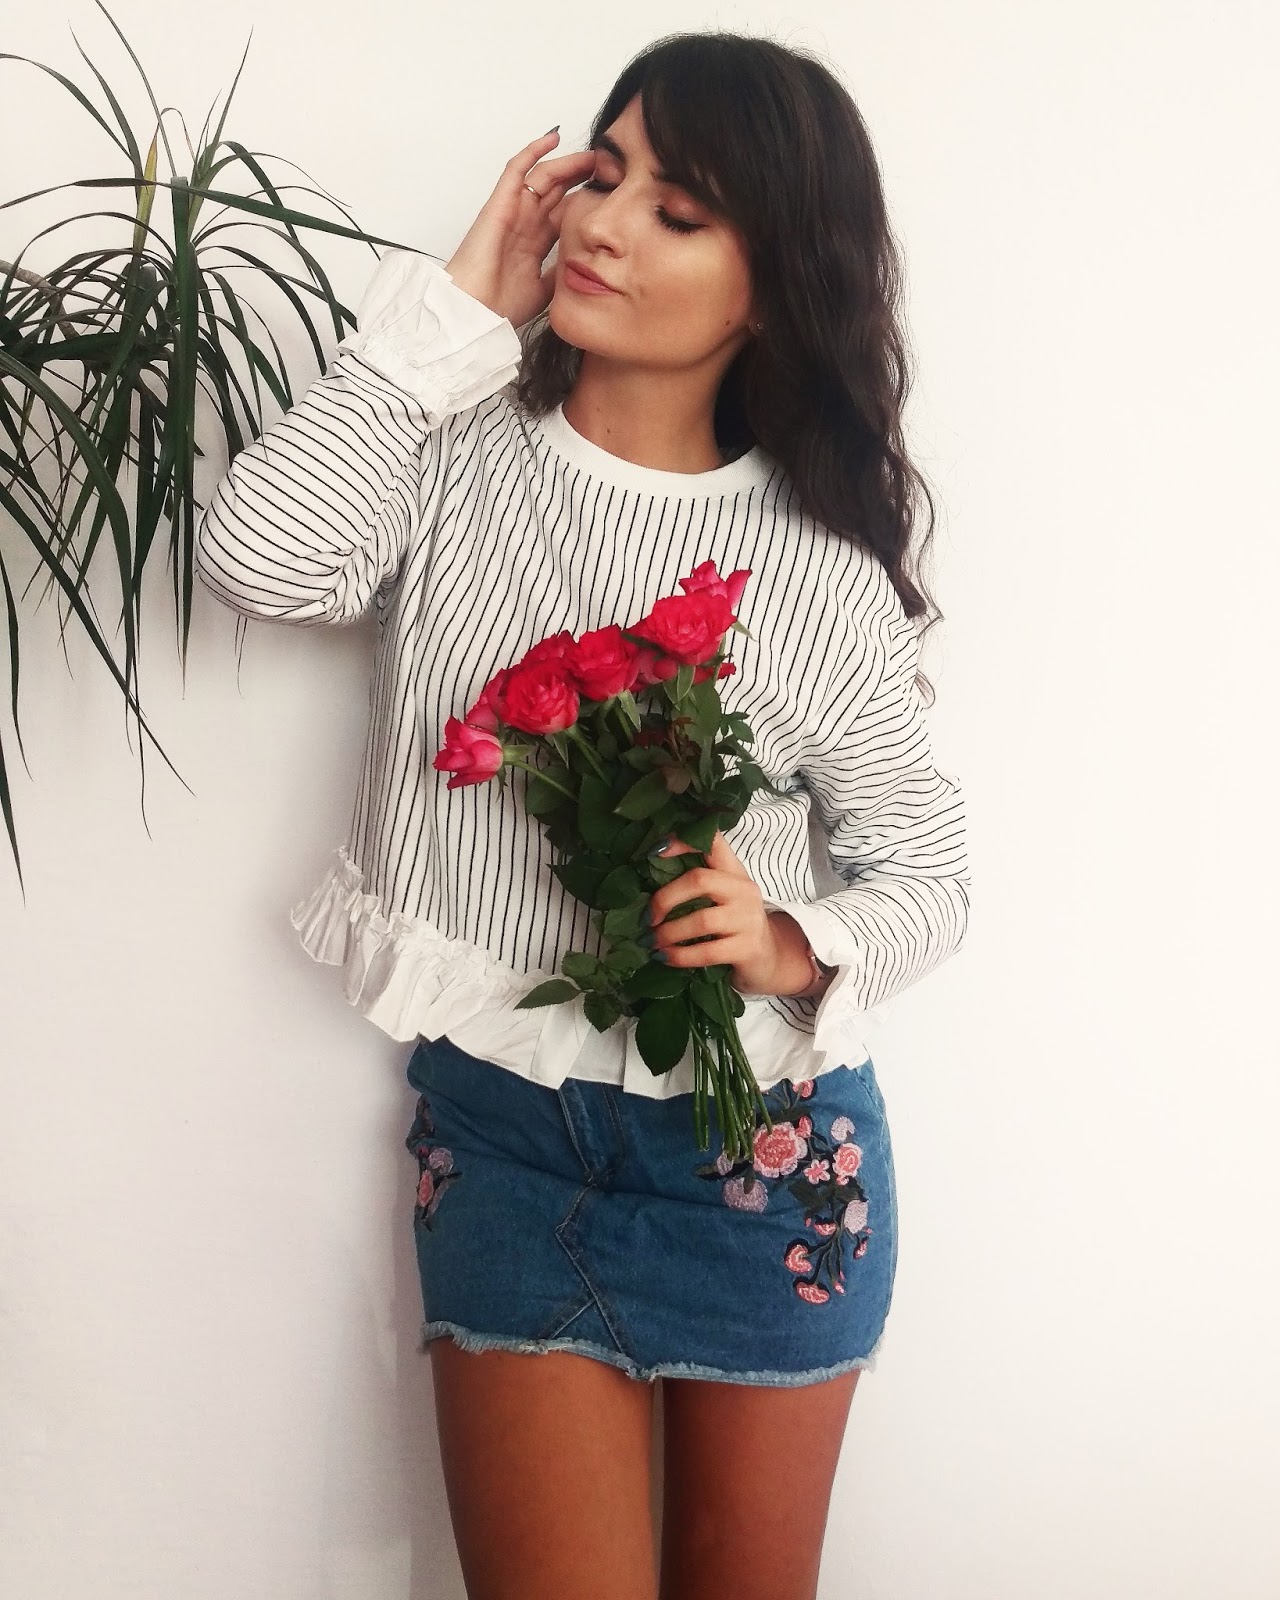 Roses and striped blouse || Róże i bluzka w paski - Sandina.pl to blog ...